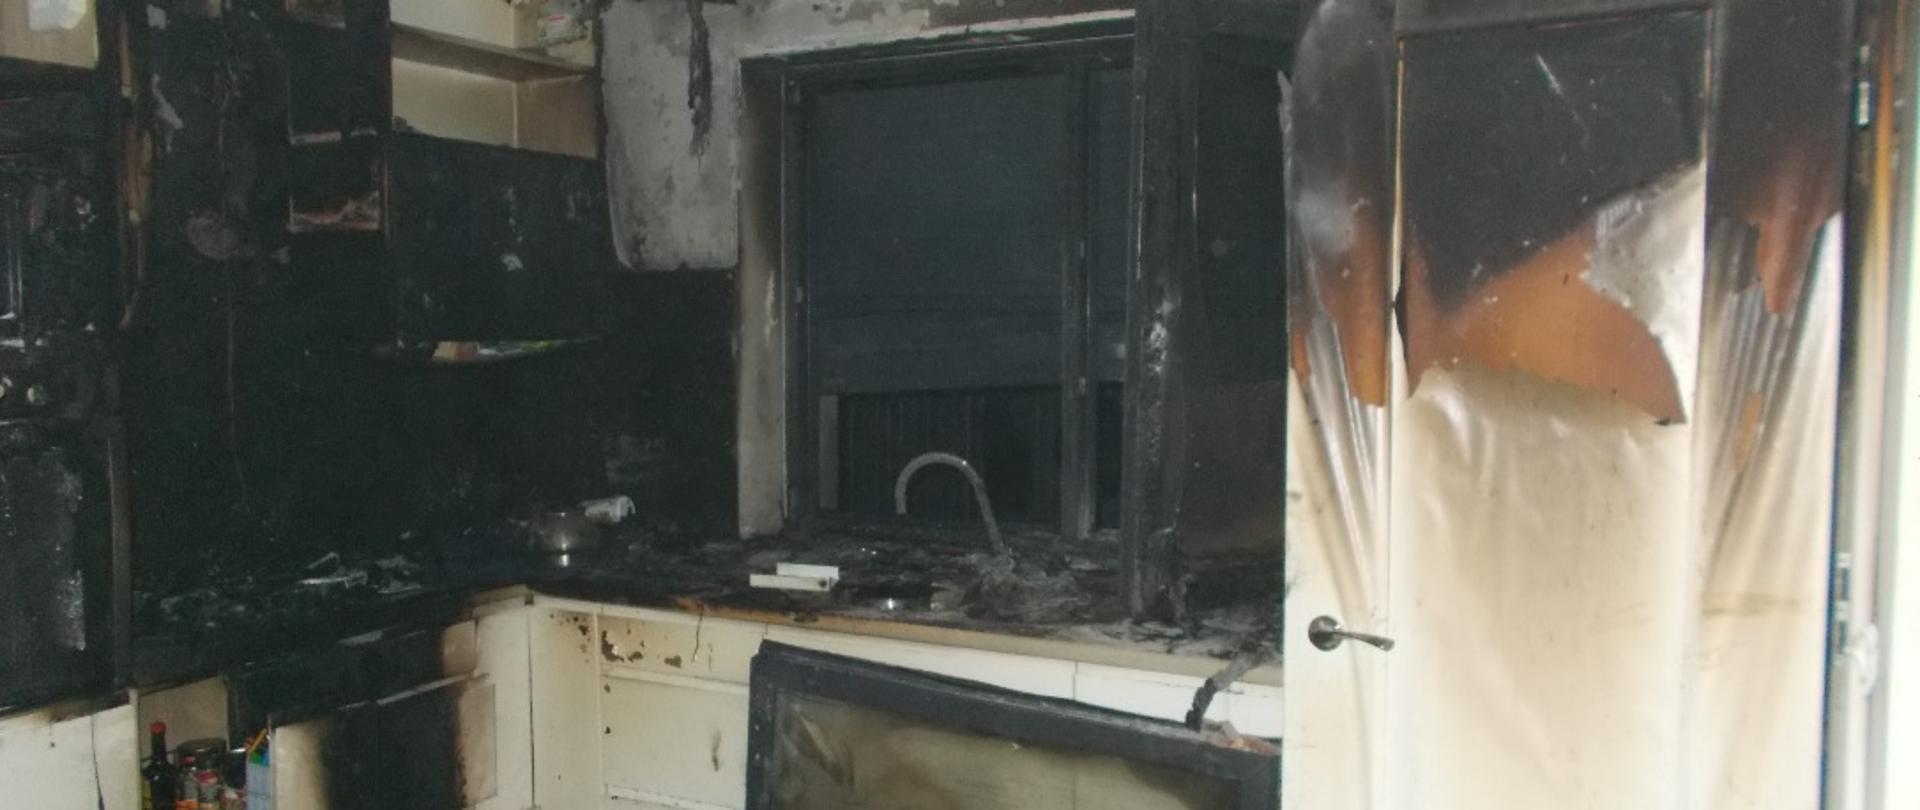 Zdjęcie przedstawia spaloną kuchnię